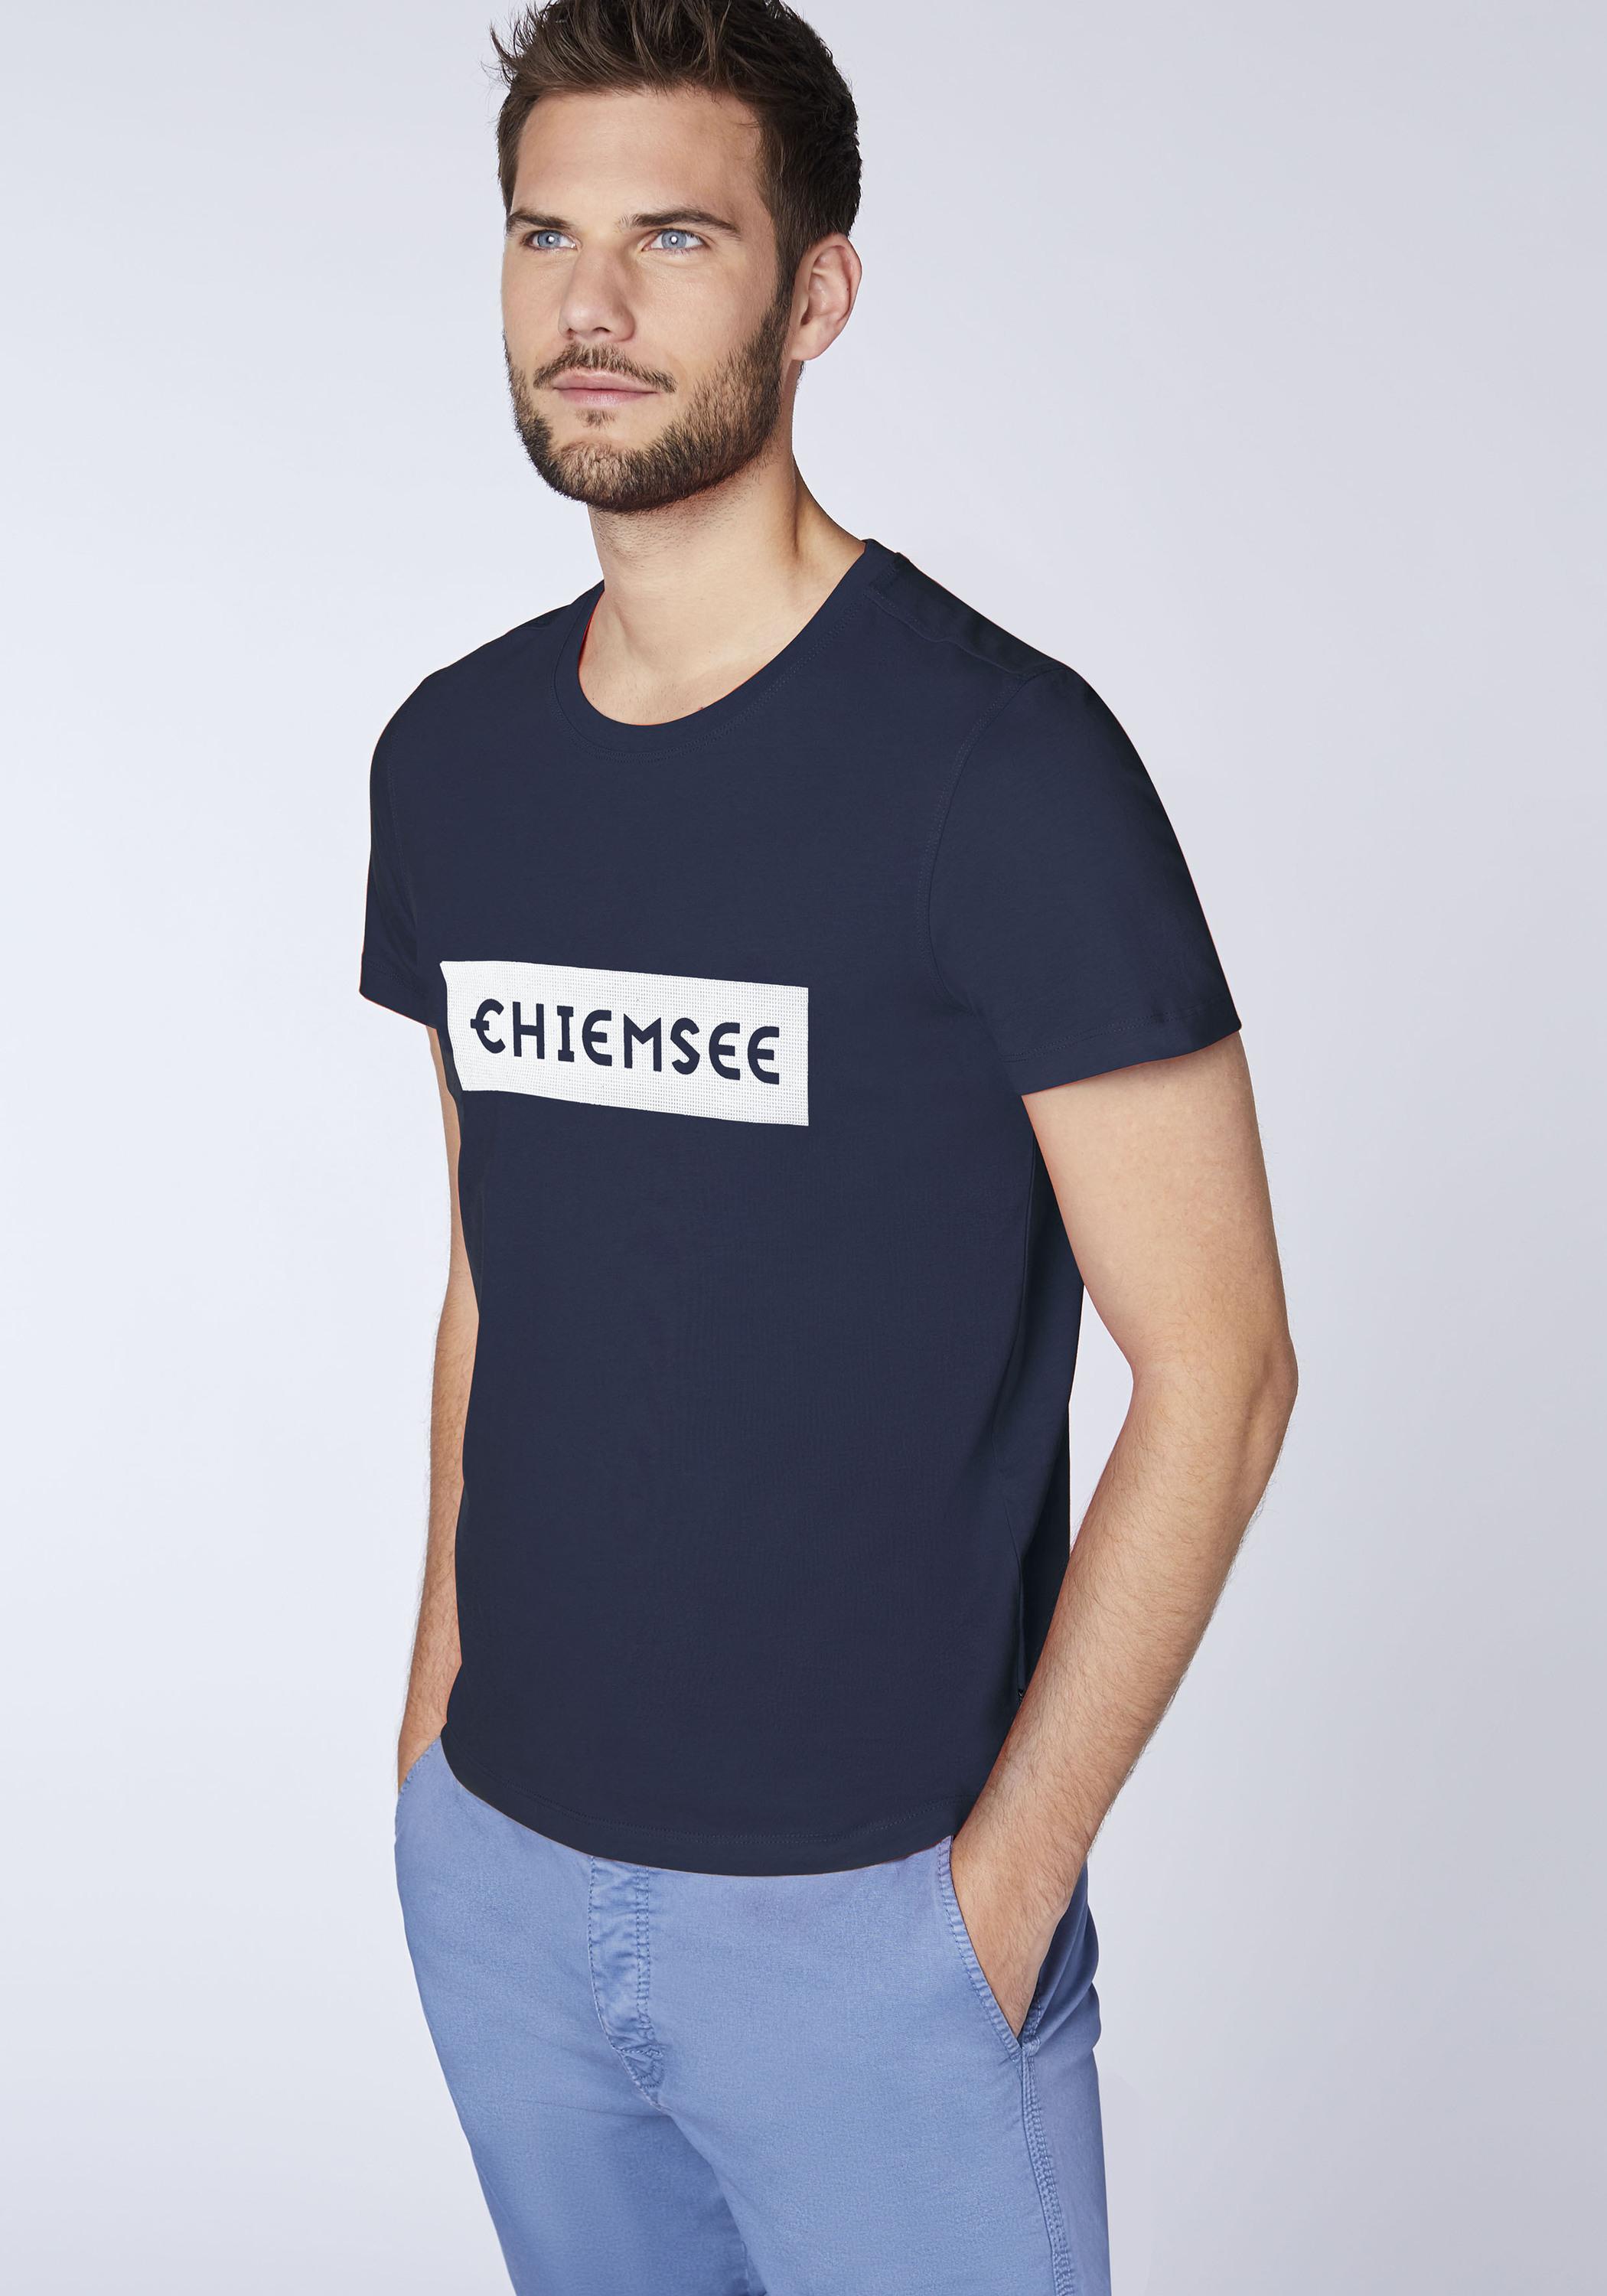 Chiemsee T-Shirt T-Shirt Herren Dif Dk SportScheck im Blue/Wht Shop kaufen Online von